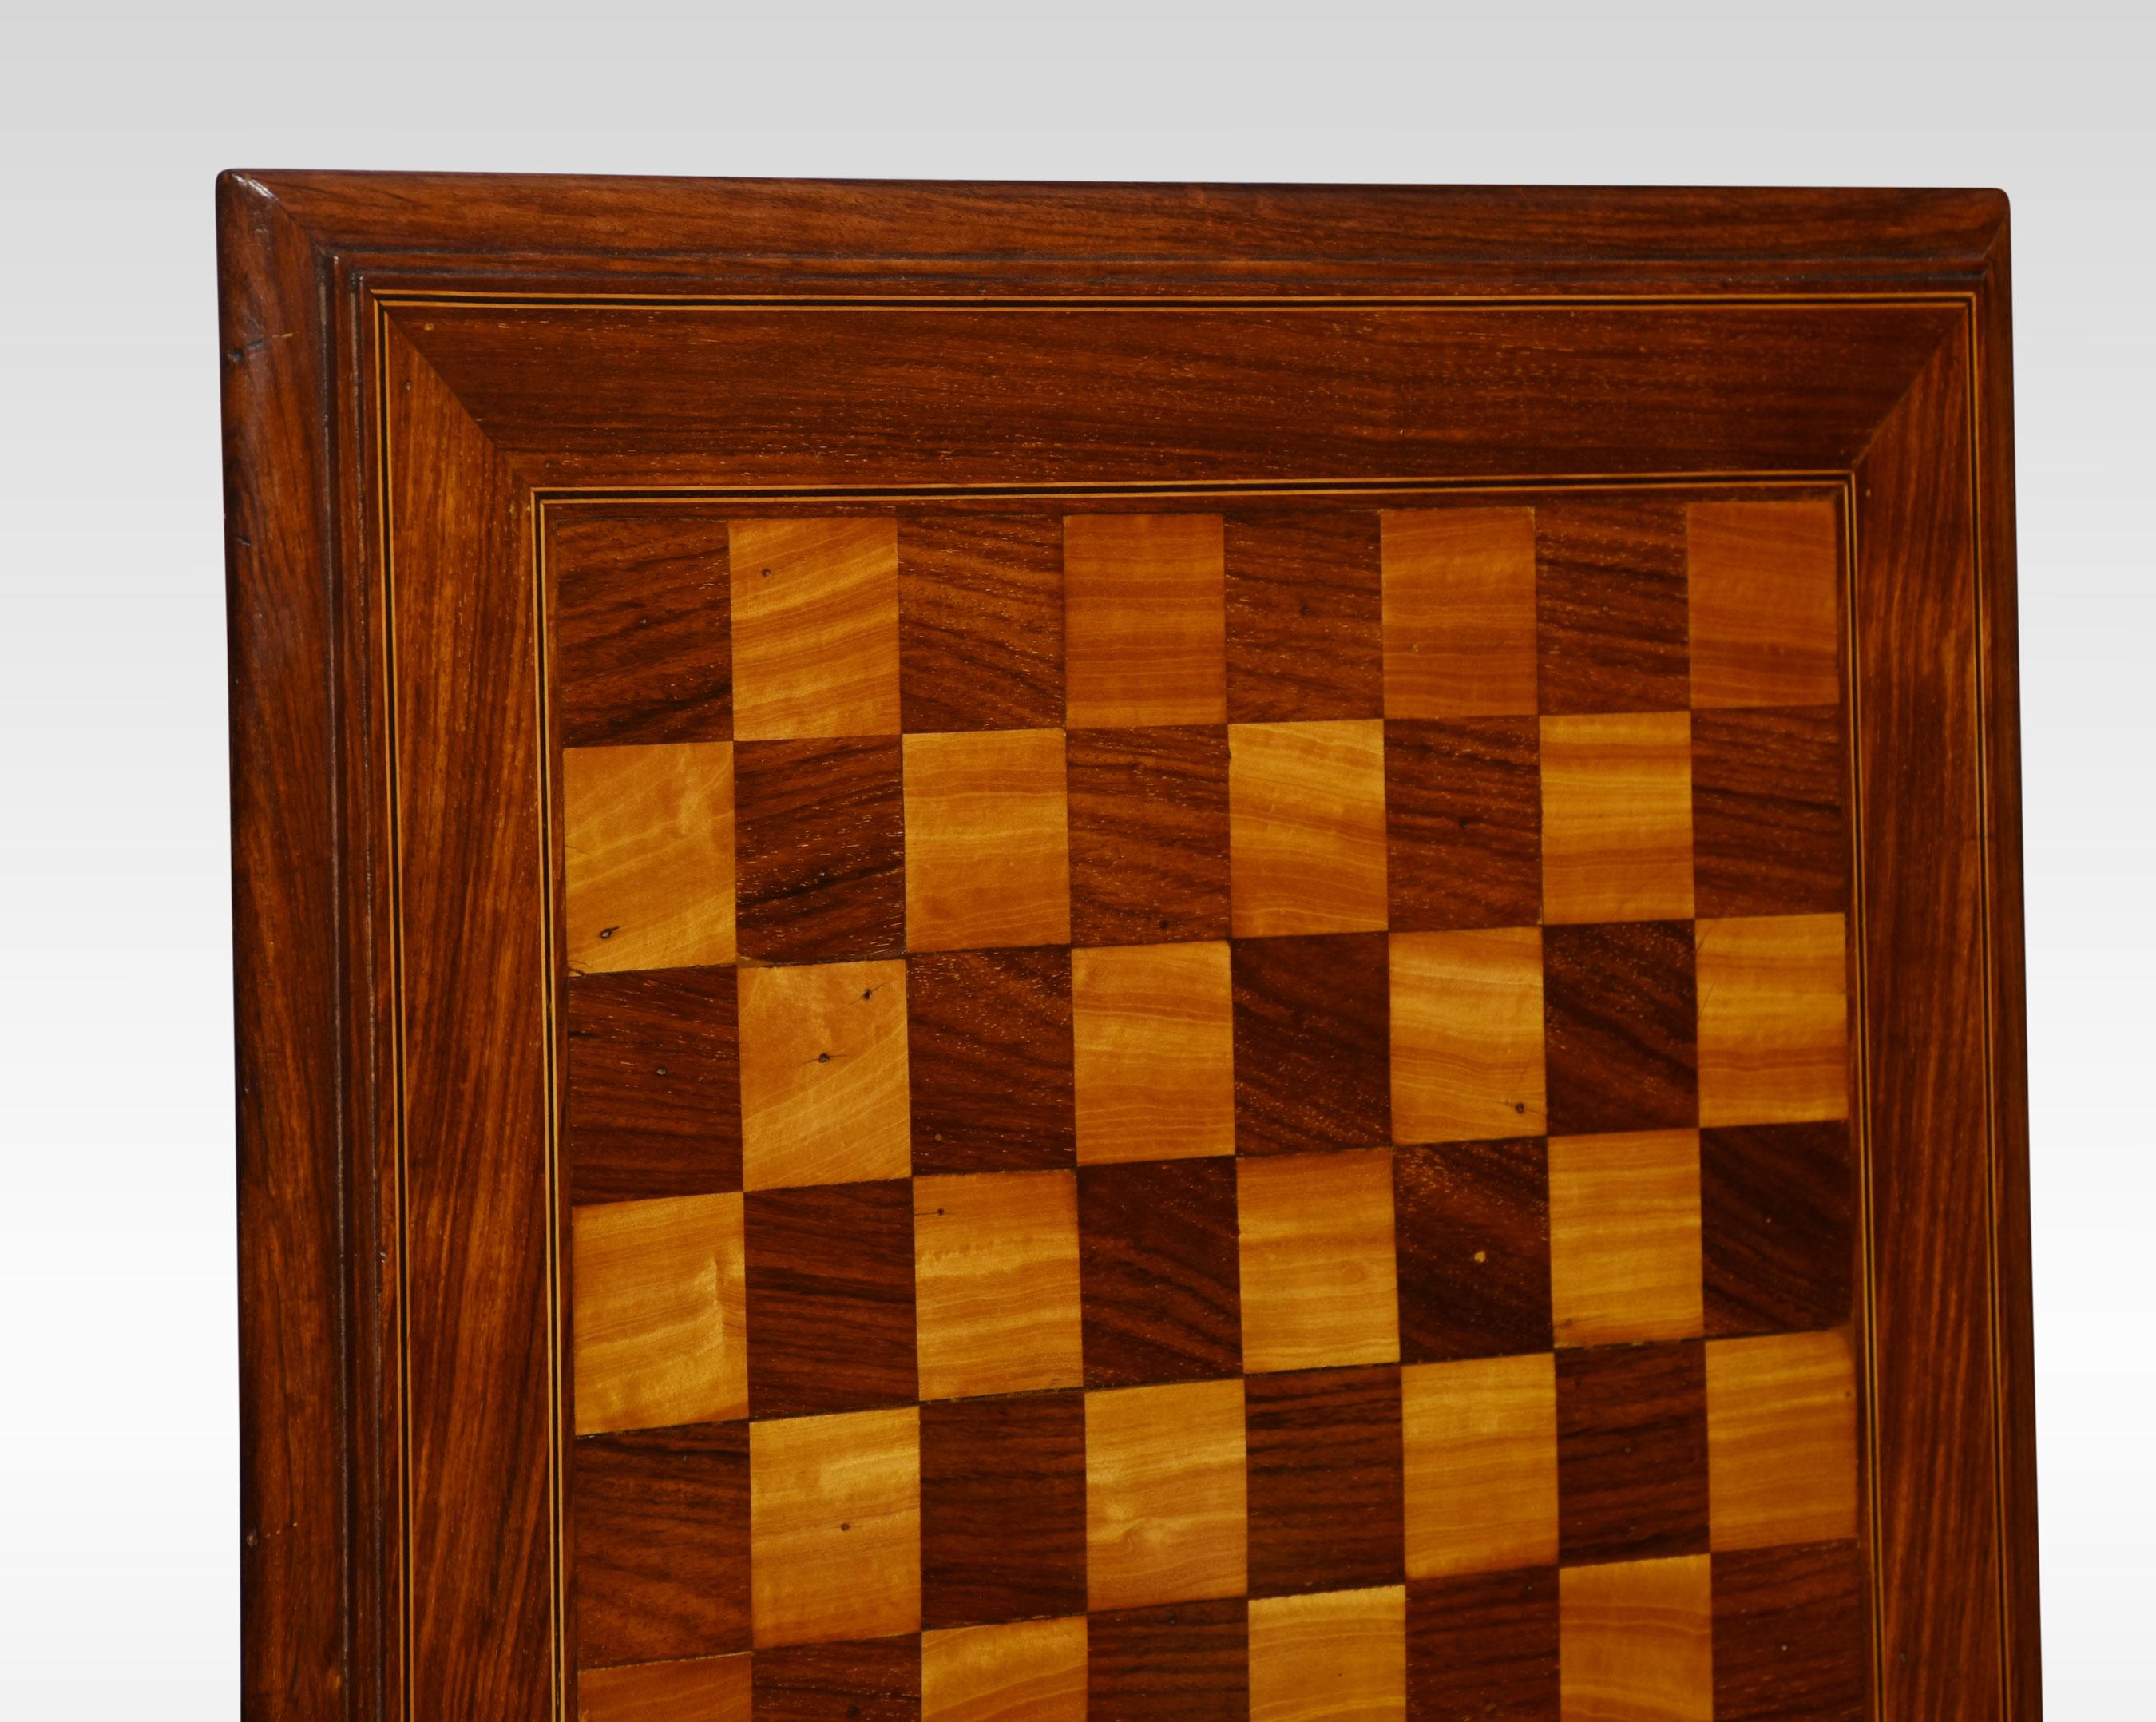 chess board dimensions